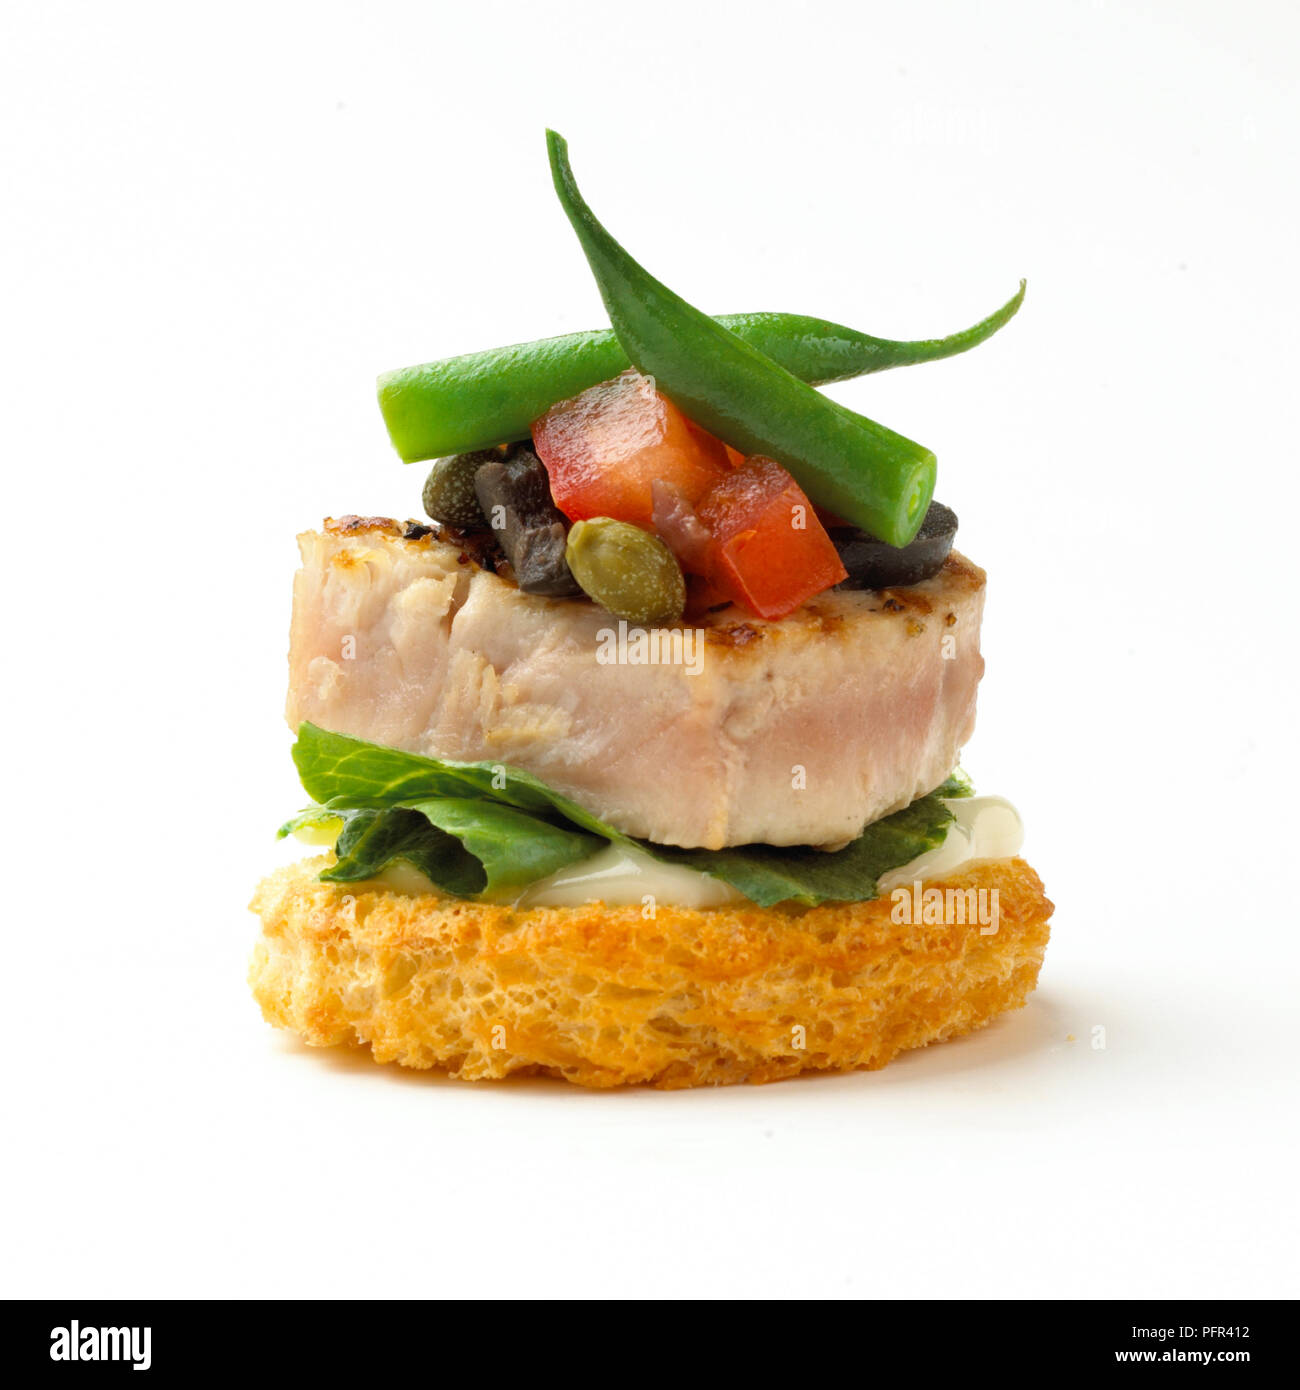 Canape, seared tuna nicoise croute Stock Photo